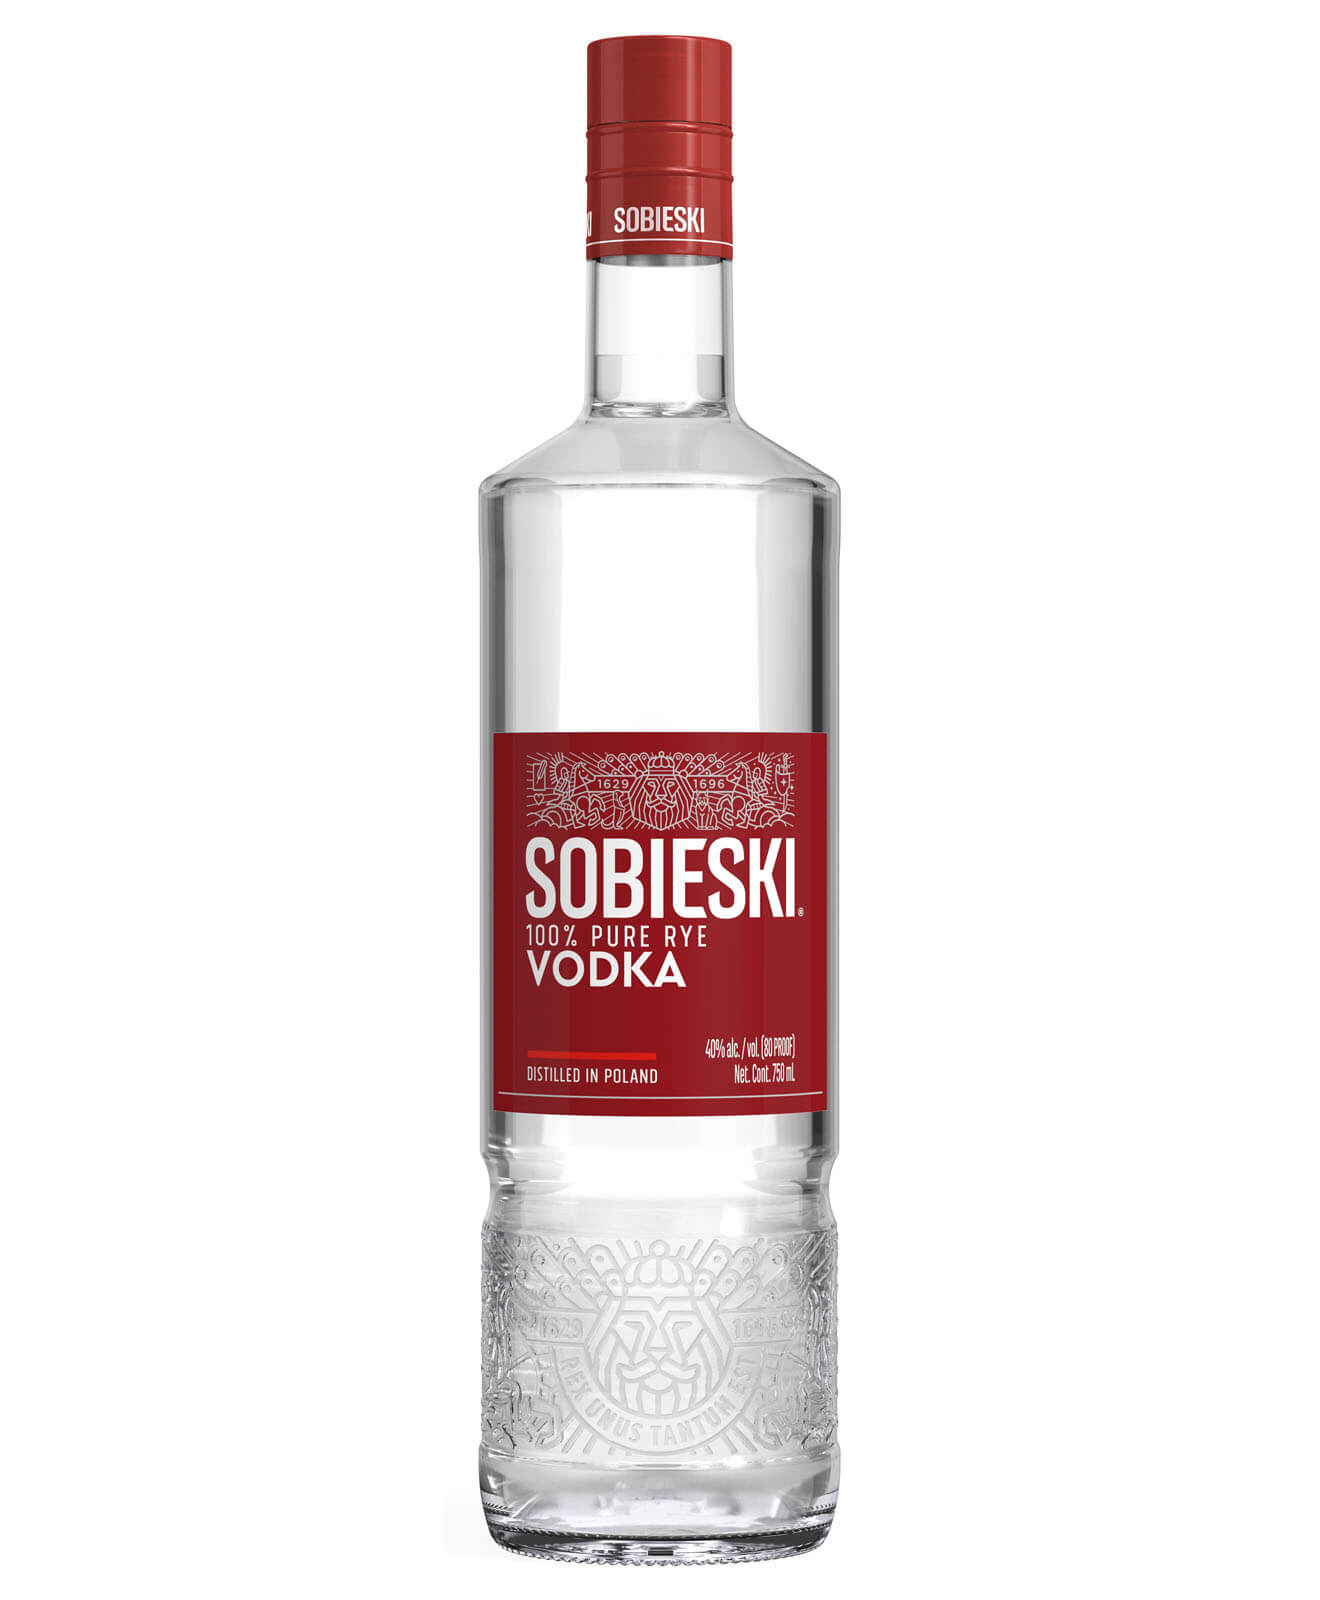 Sobieski Vodka, named after a Polish king, in a sleek bottle.